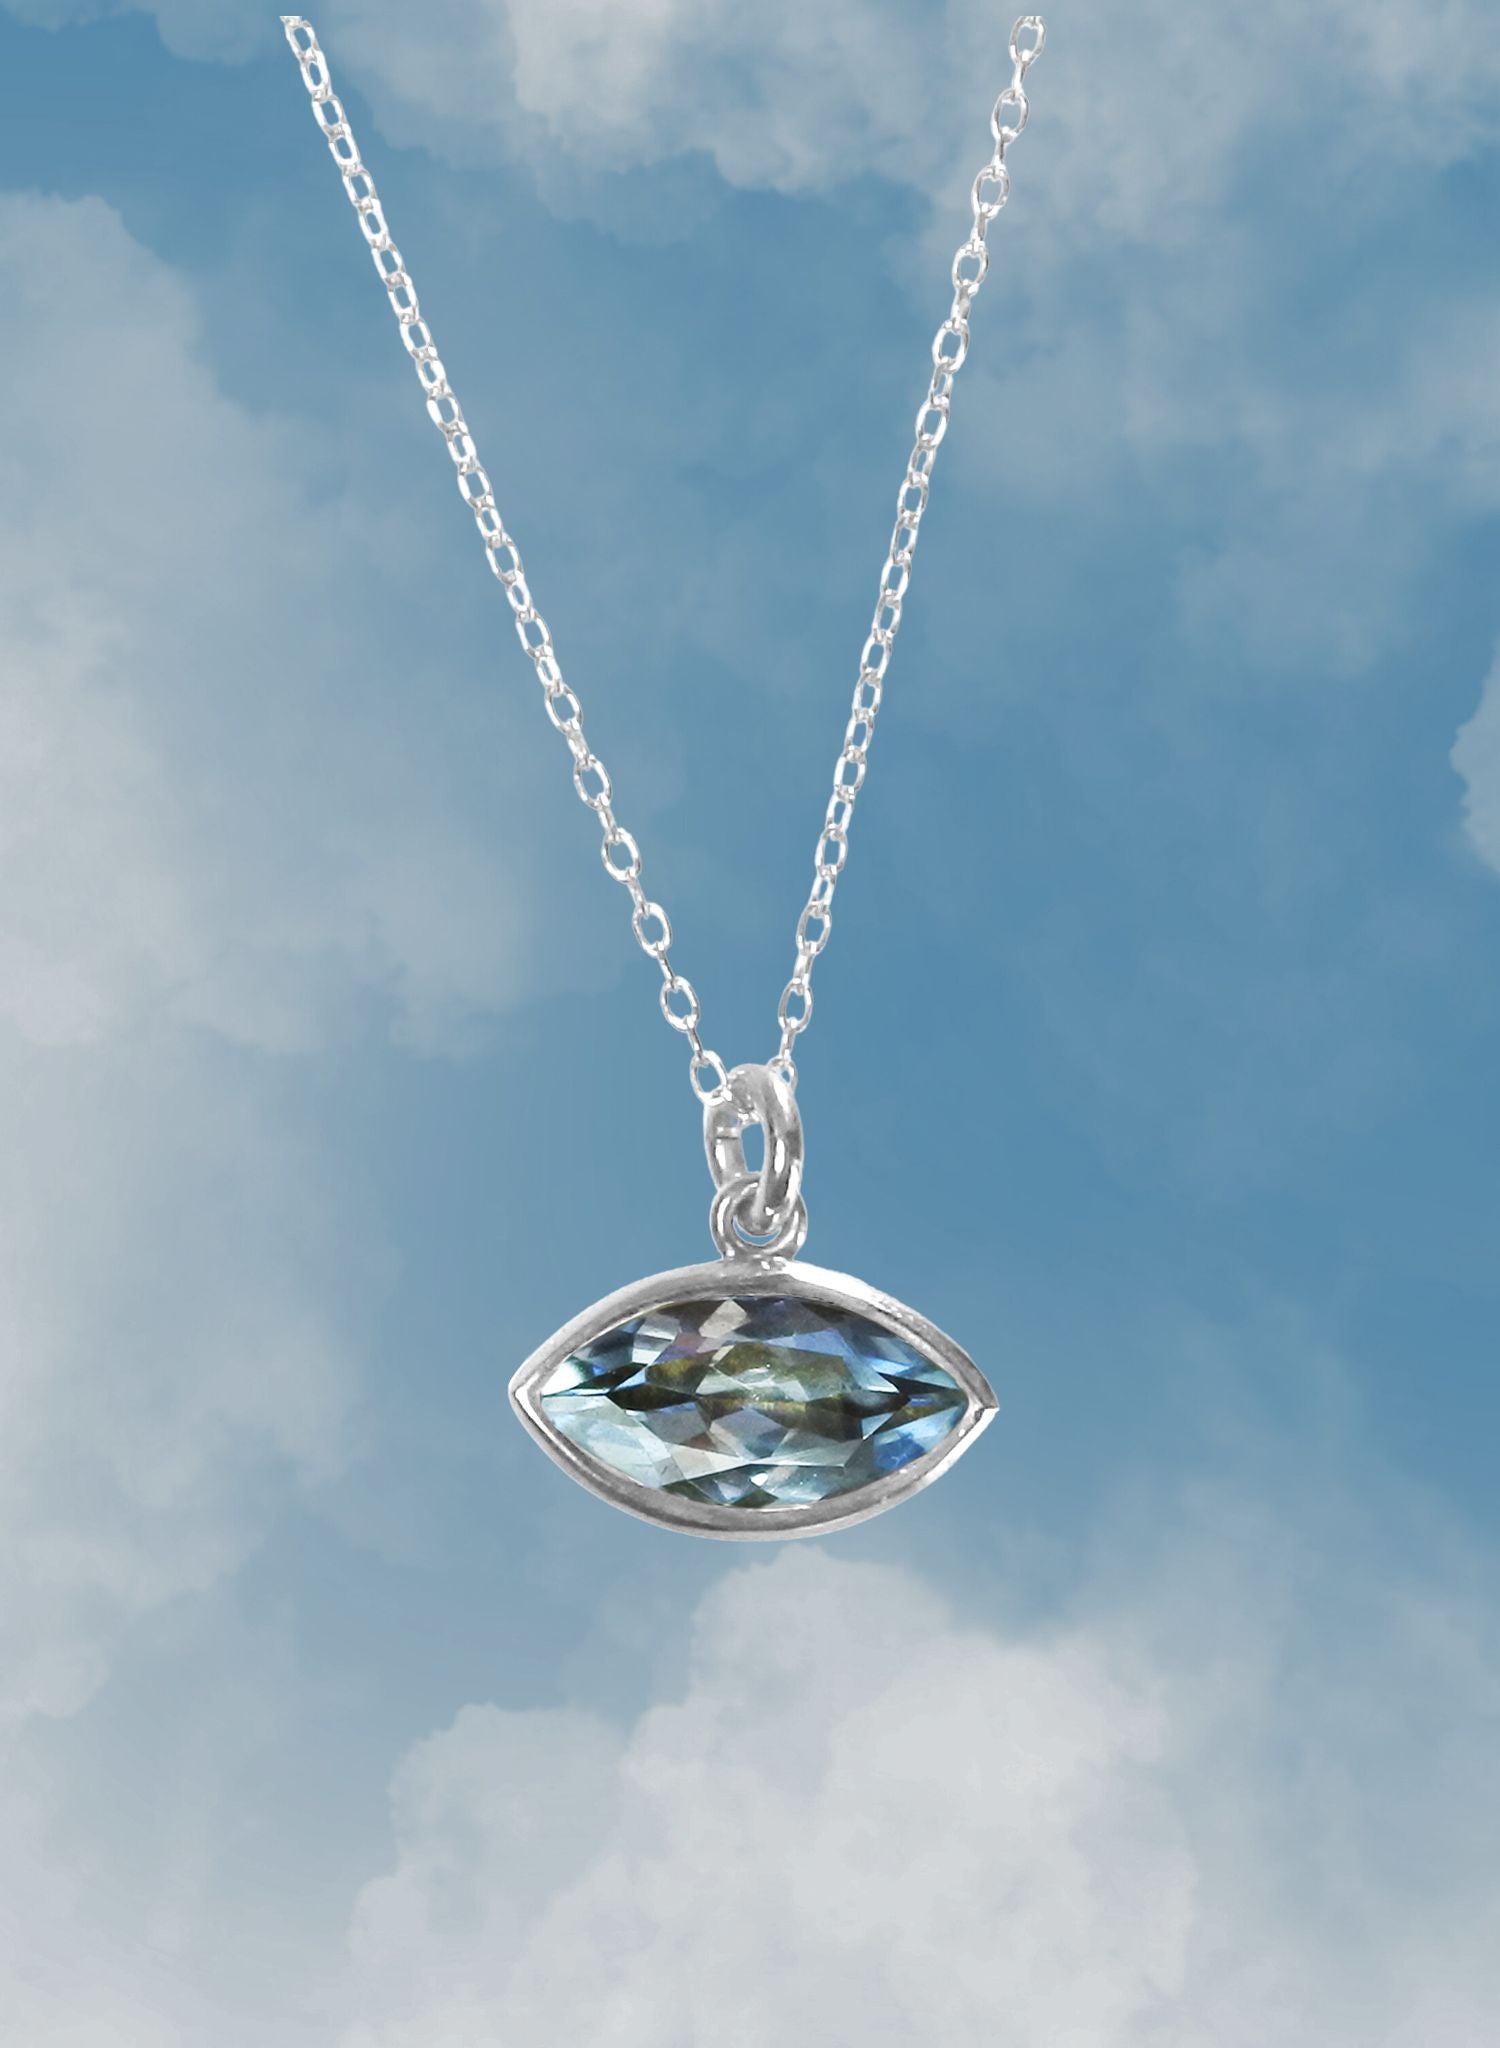 collier-marquise-aigue-marine-argent-pierre-fine-gemstone-bijou-femme-Bento-jewelry-